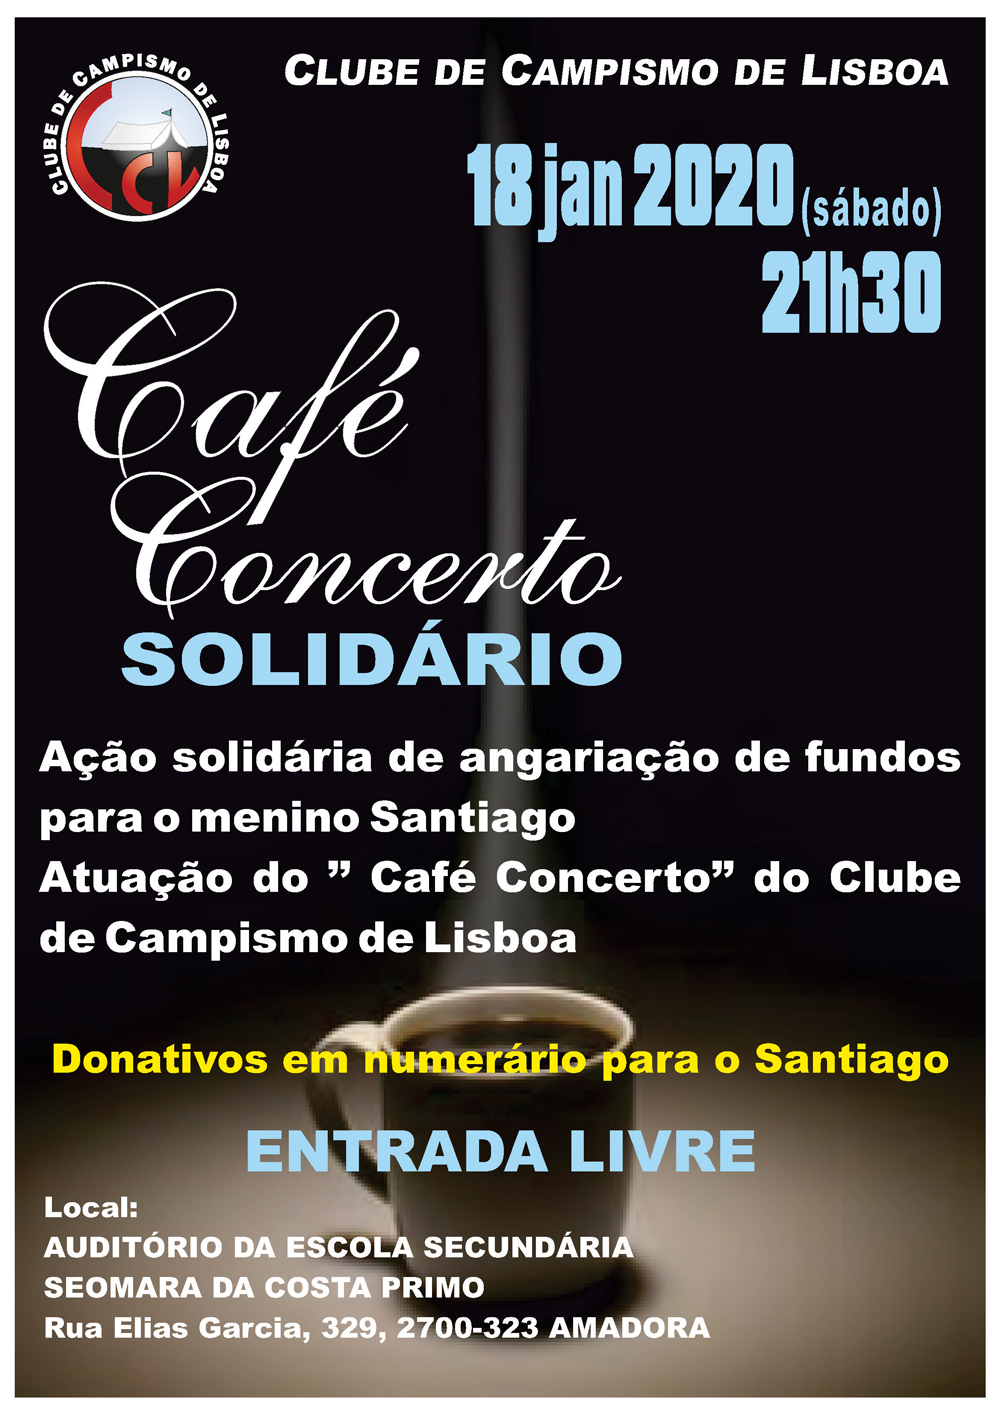 Cafe Concerto Solidario 18Jan2020